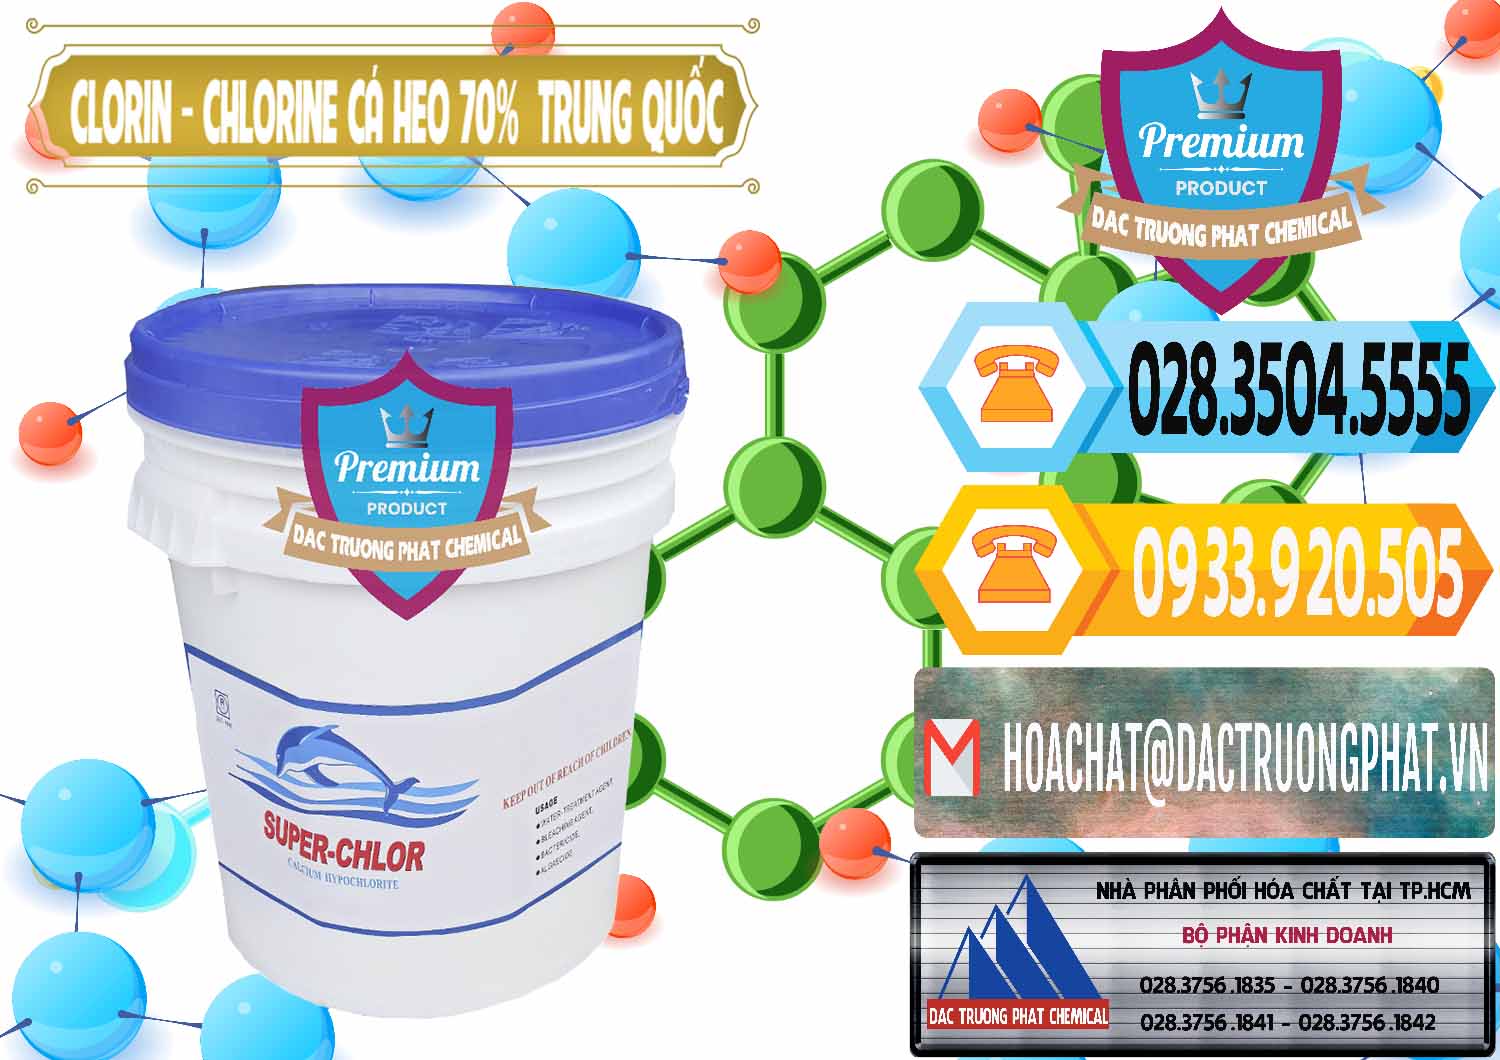 Chuyên bán và cung ứng Clorin - Chlorine Cá Heo 70% Super Chlor Nắp Xanh Trung Quốc China - 0209 - Phân phối & cung cấp hóa chất tại TP.HCM - hoachattayrua.net